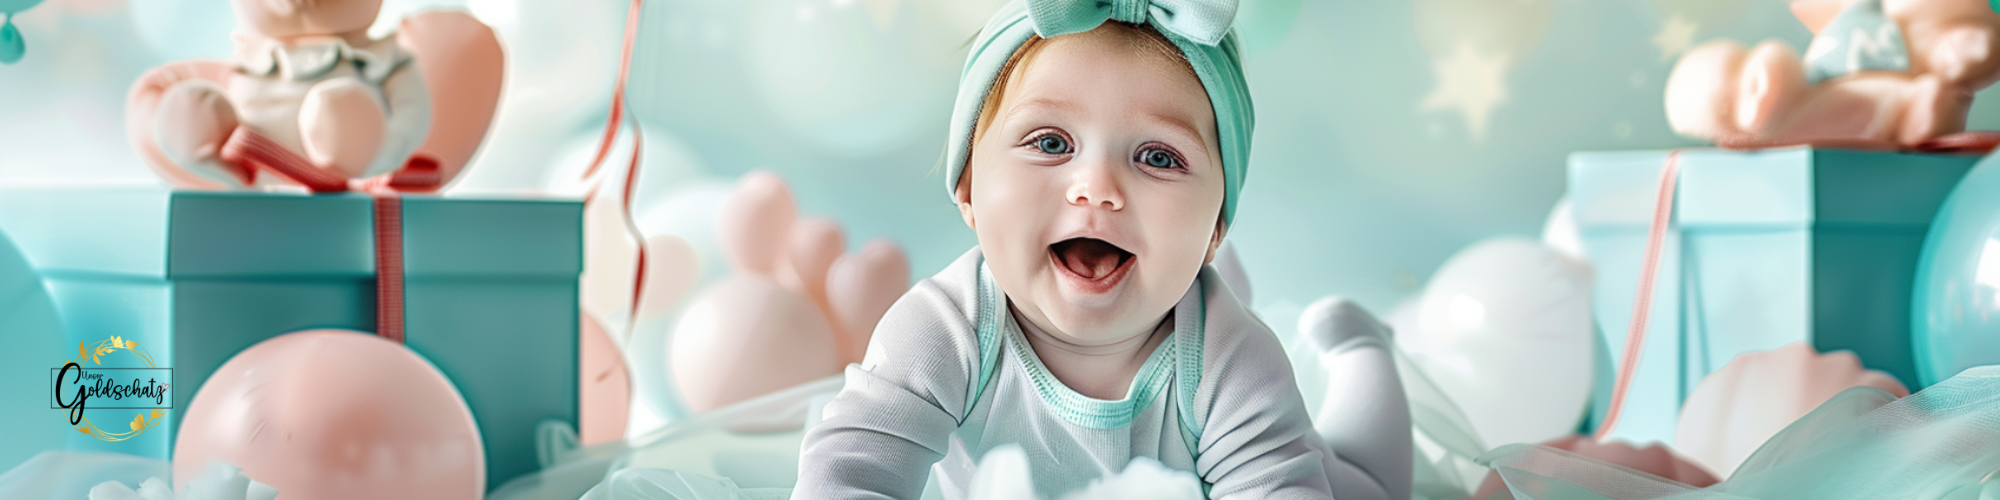 Ein fröhliches Baby in einem blau-weißen Kleid mit blauer Mütze. Nachhaltige, bio-zertifizierte Baumwolle für personalisierte Geschenke bei UnserGoldschatz.de.